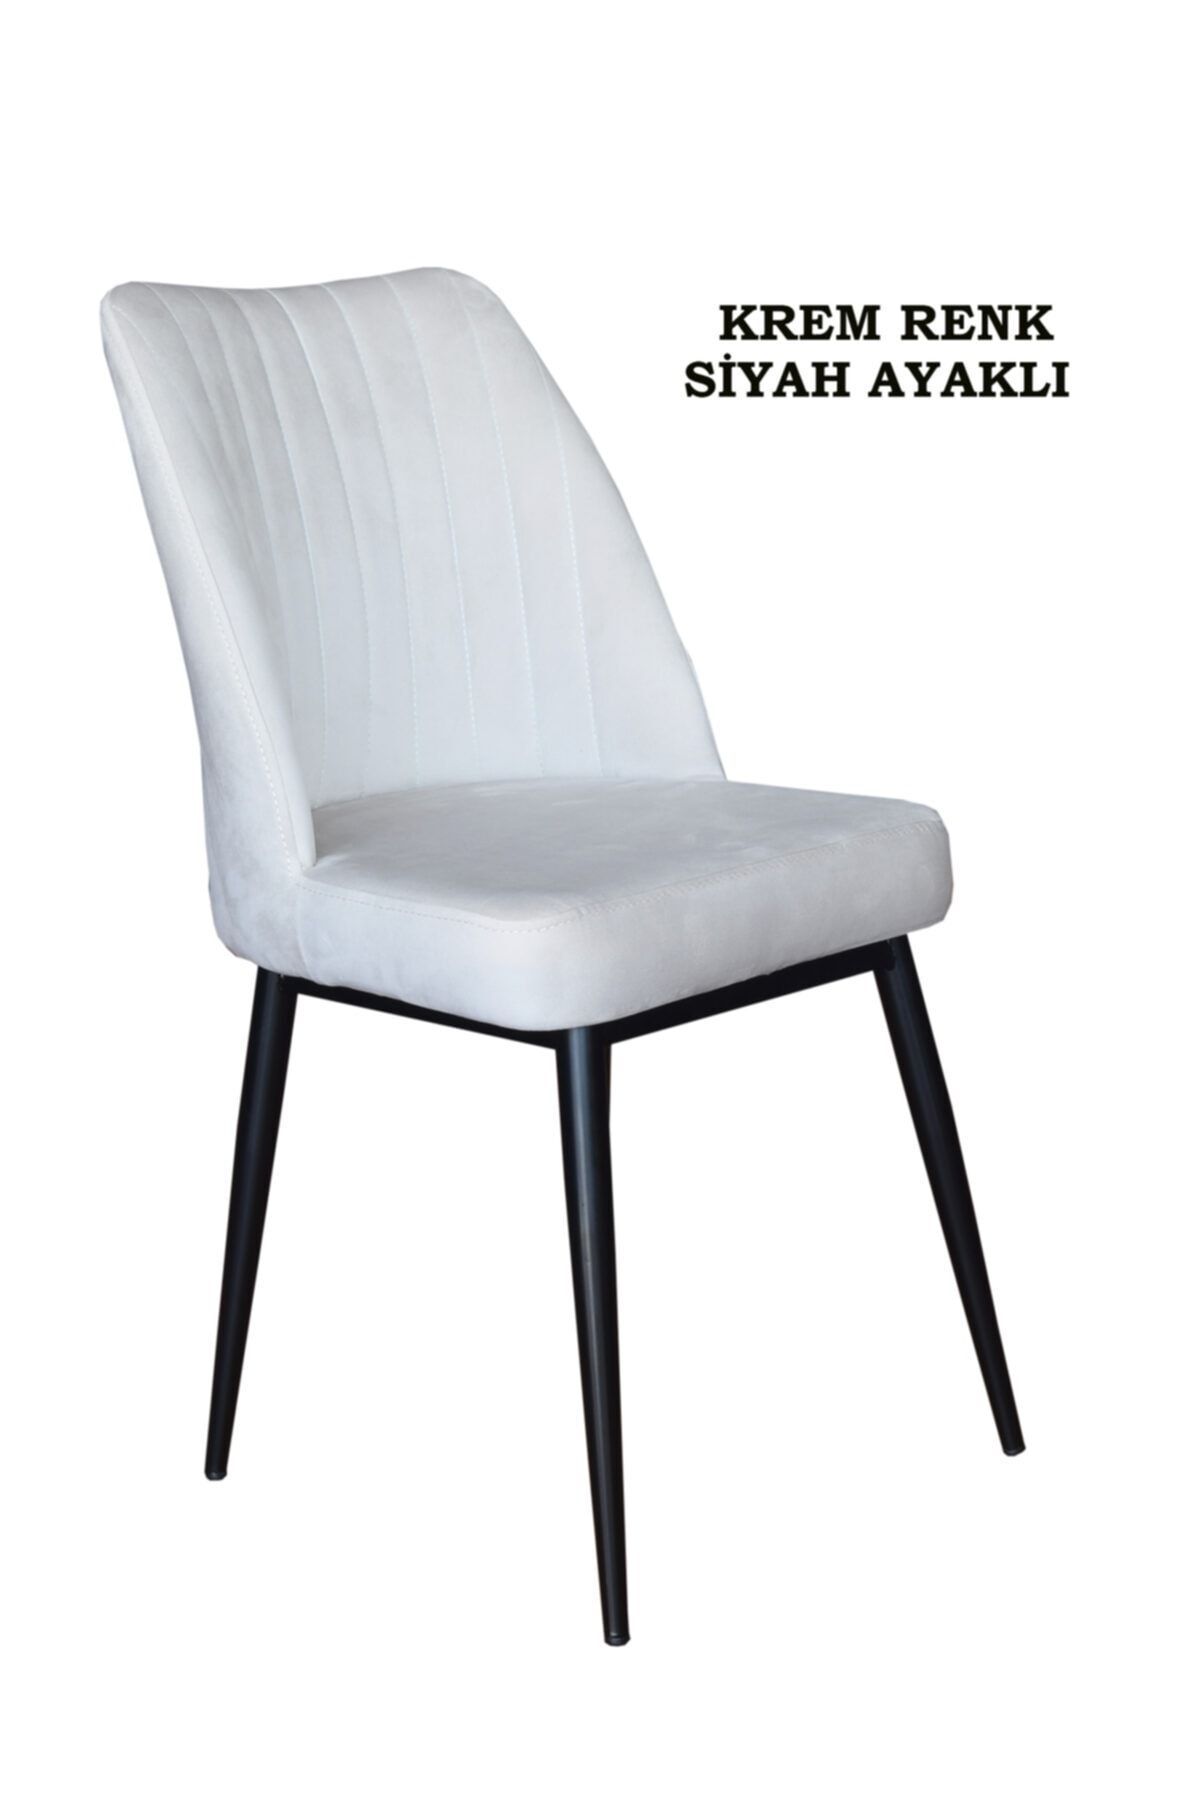 Ankhira Elit Sandalye, Mutfak Ve Salon Sandalyesi, Silinebilir Krem Renk Kumaş, Siyah Ayaklı